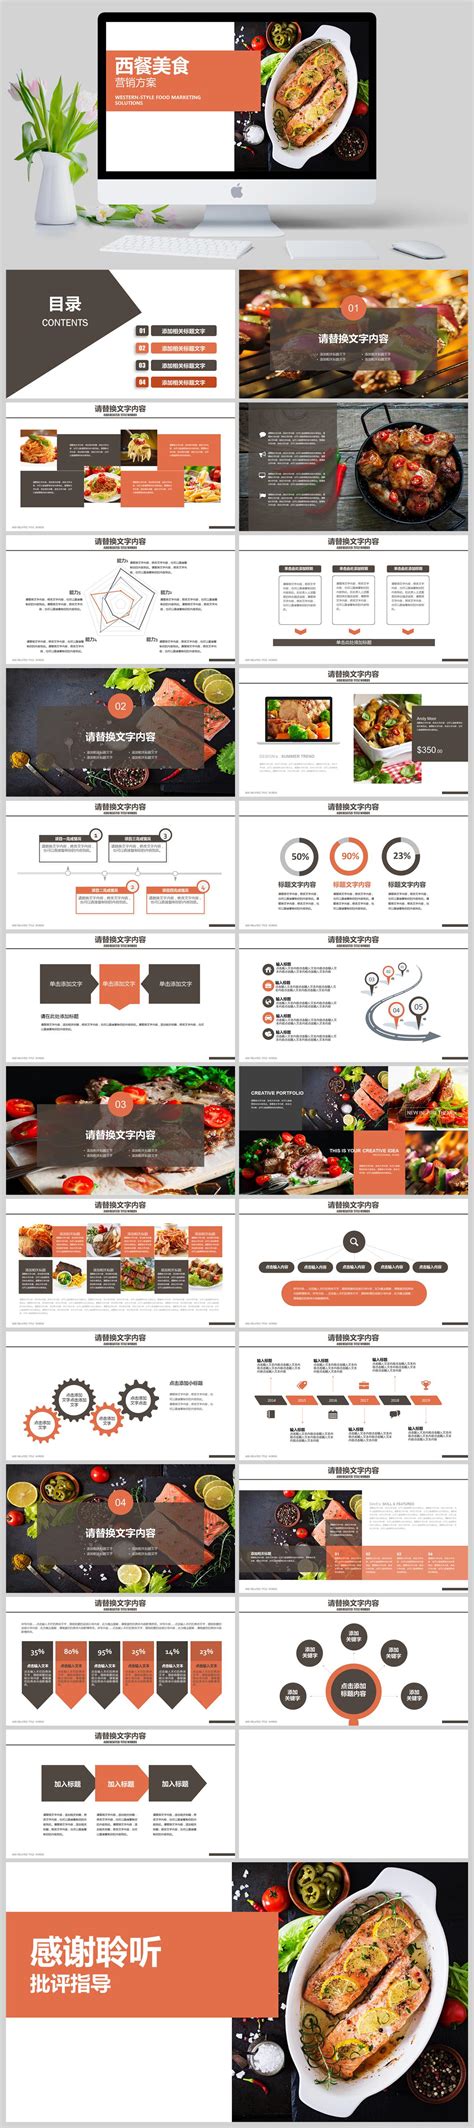 西餐美食营销方案PPT模板 - 当图网